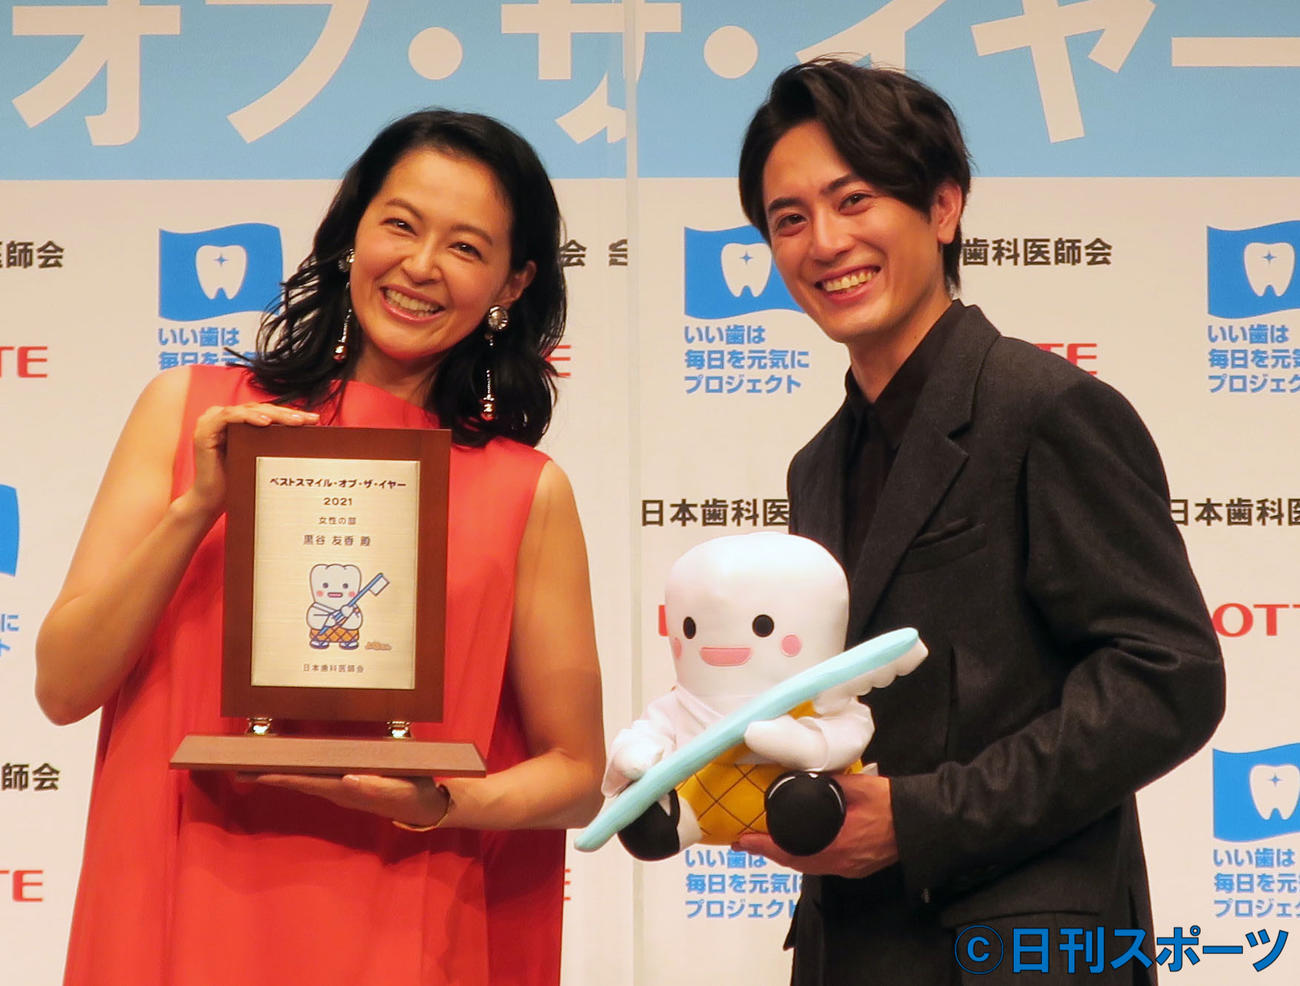 「ベストスマイル・オブ・ザ・イヤー2021」授賞式で。左から、黒谷友香、間宮祥太朗